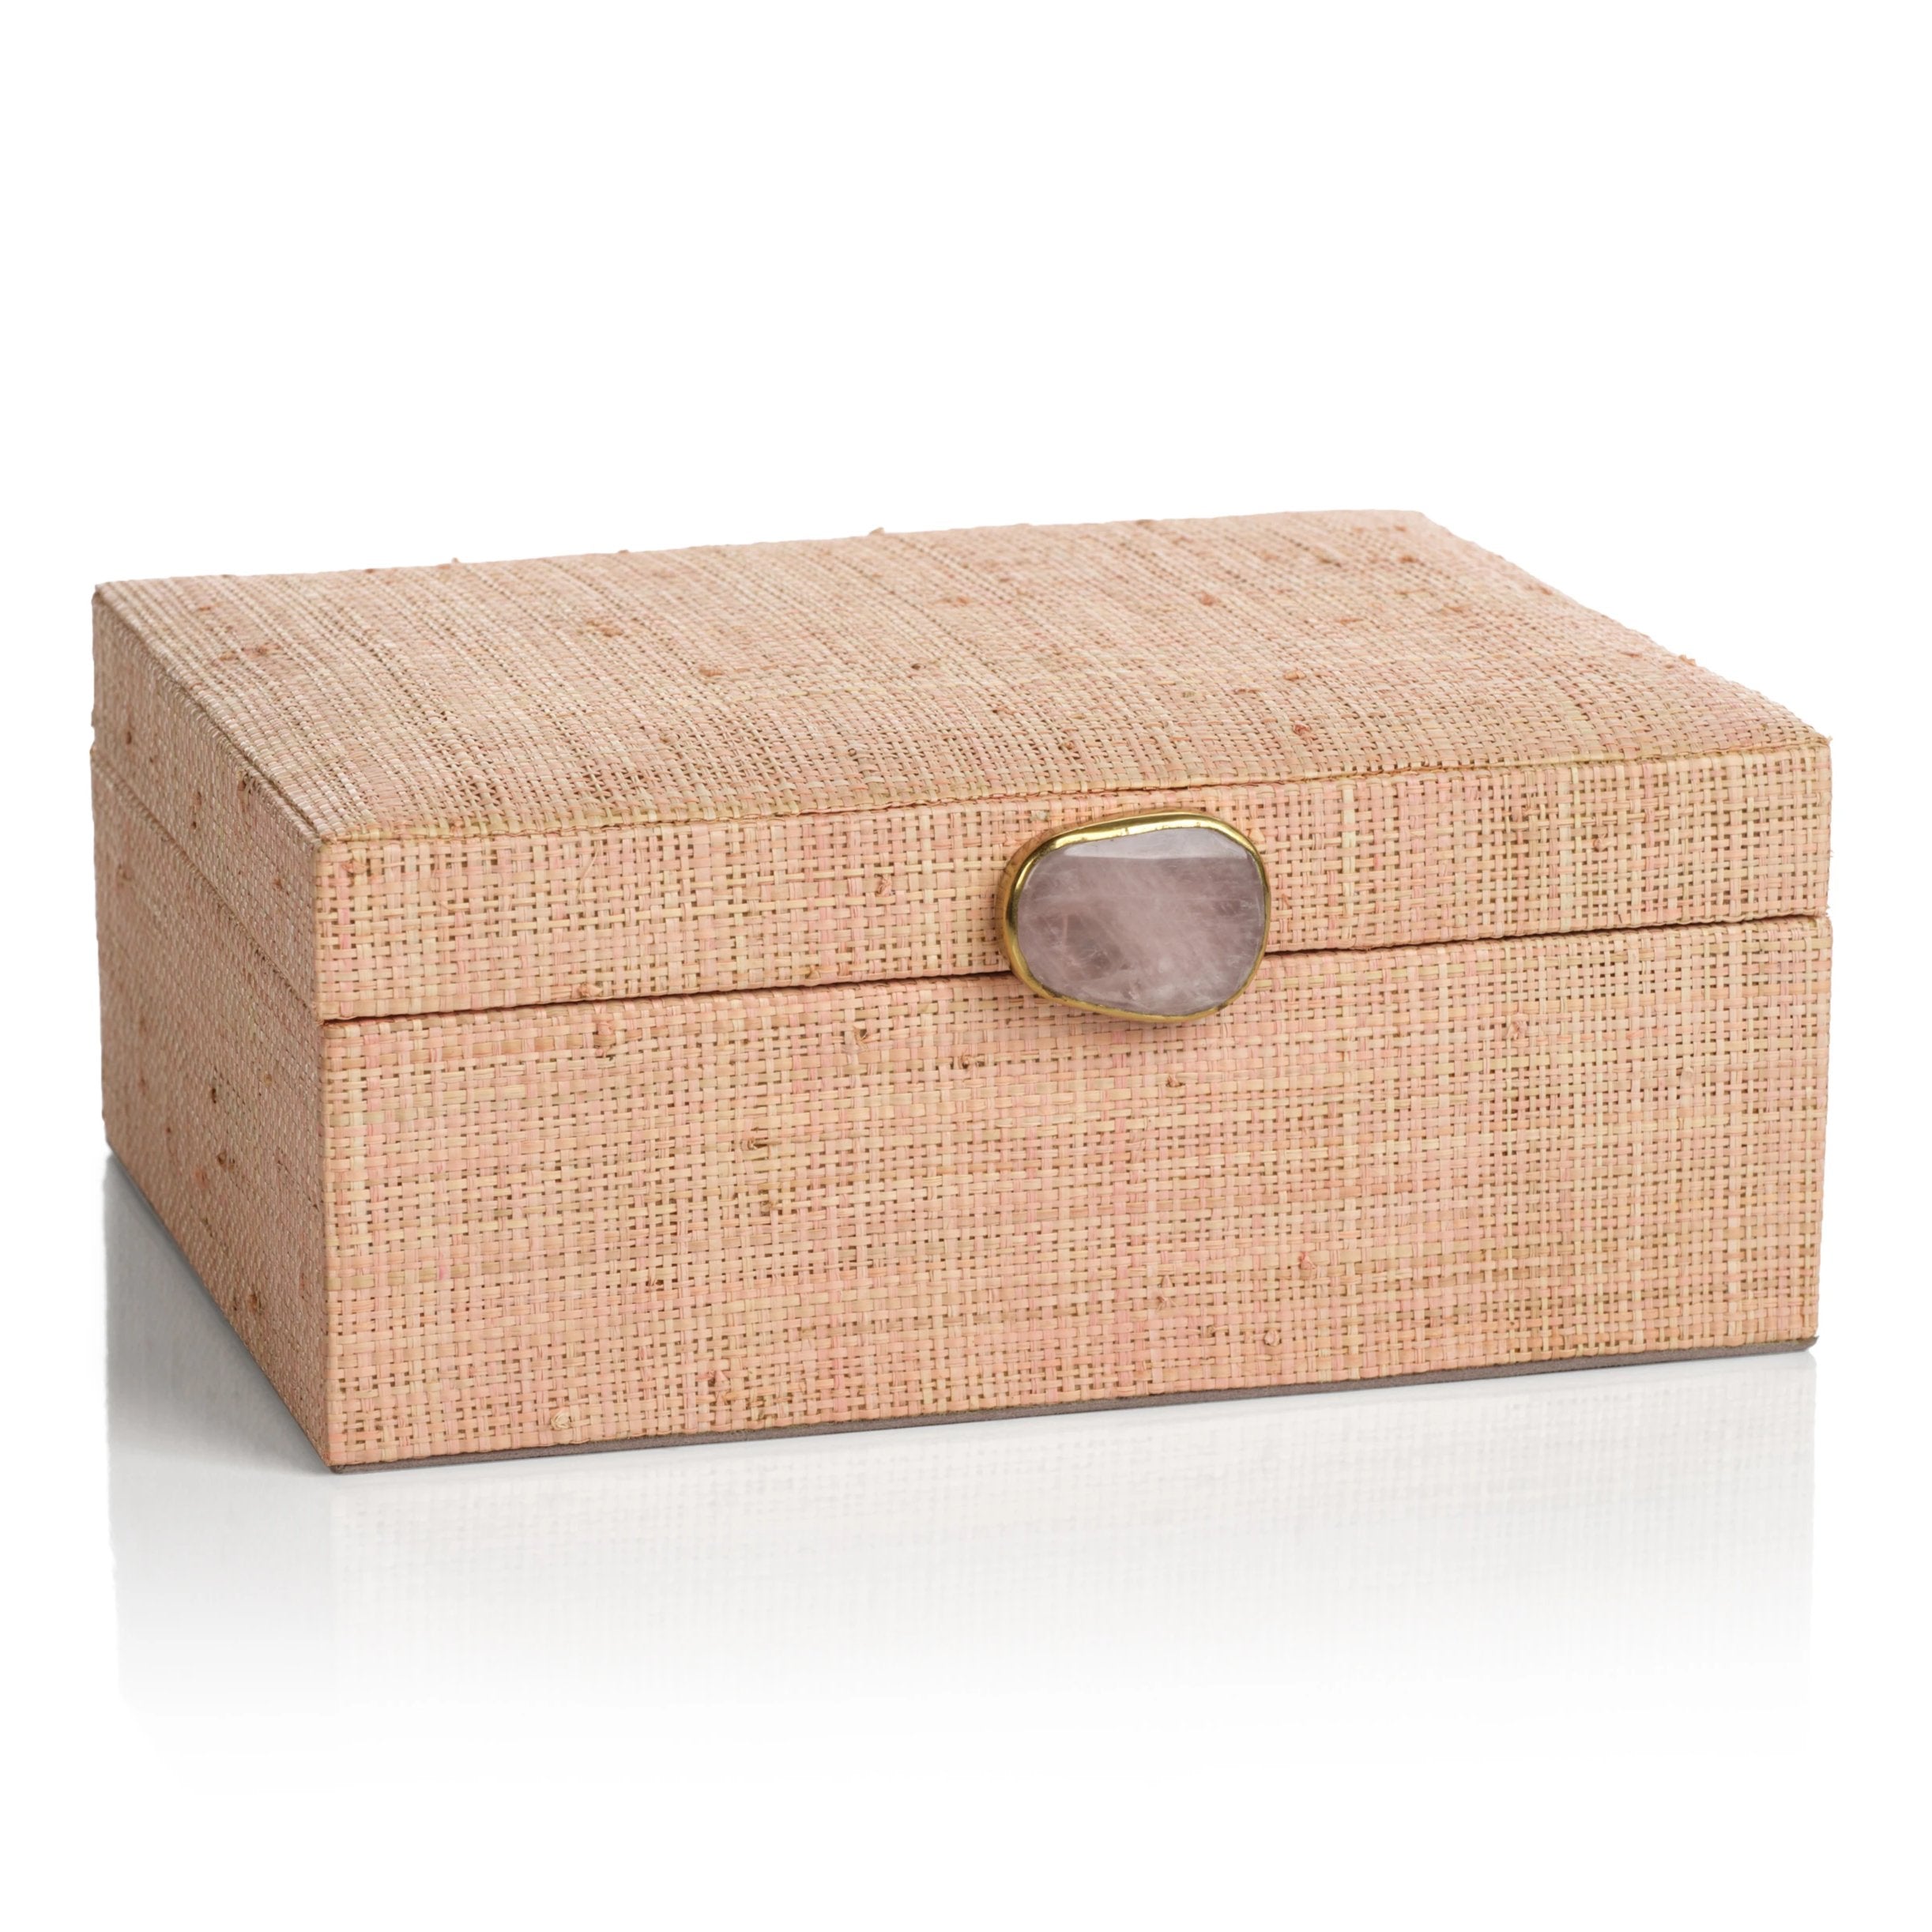 Raffia Palm Box with Stone Accent - Blush - CARLYLE AVENUE